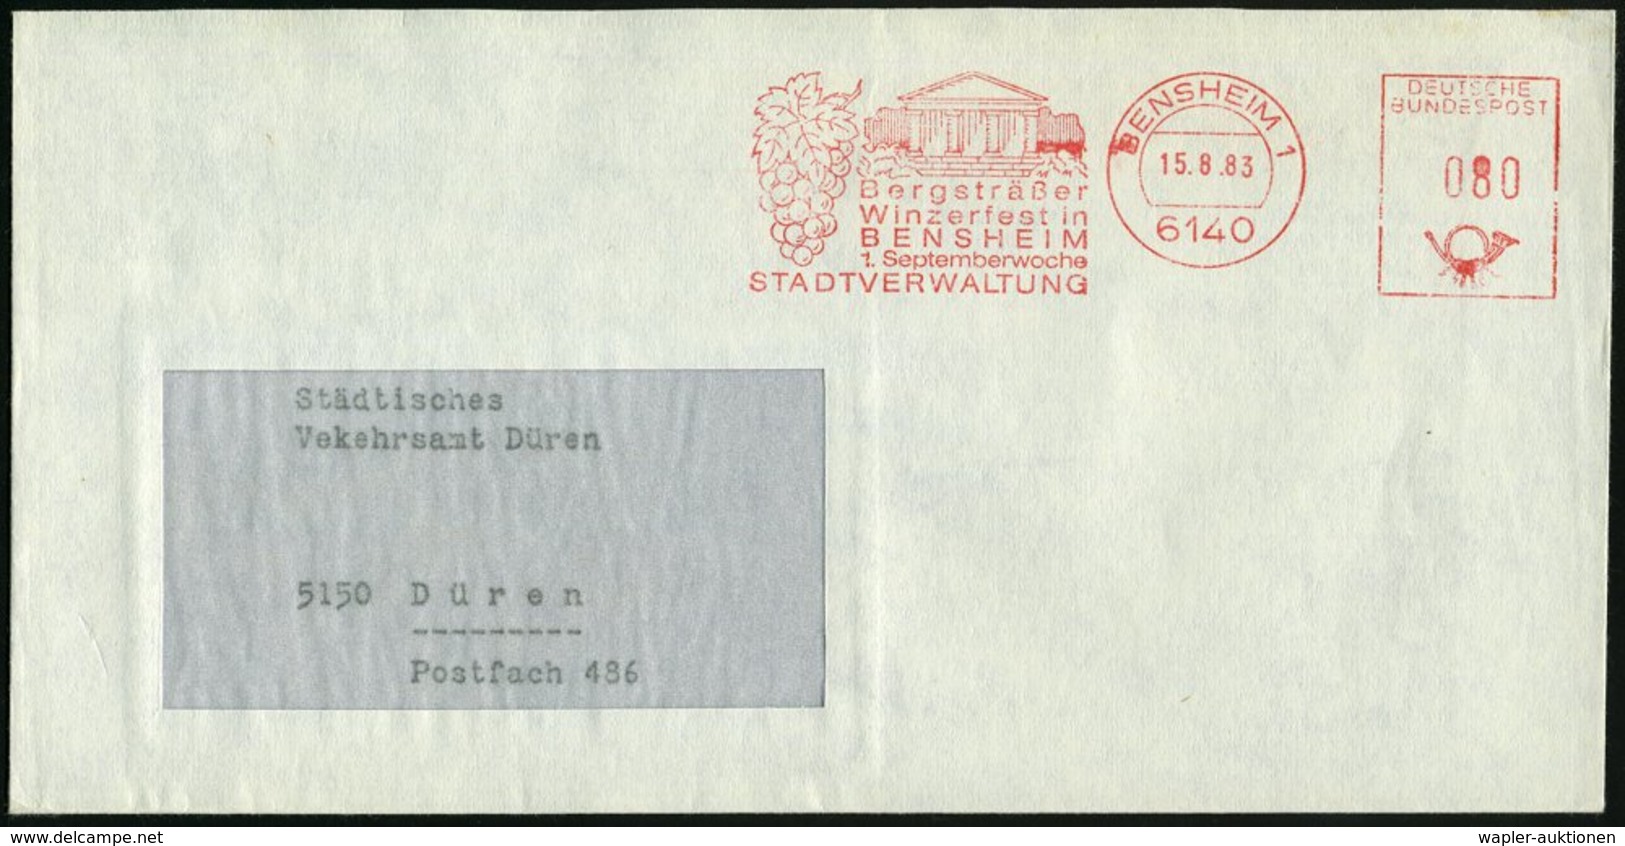 1983/91 6140 BENSHEIM 1, 2 Verschiedene Kommunale Absender-Freistempel: ..Winzerfest In BENSHEIM 1. SEPTEMBERWOCHE (Wein - Other & Unclassified